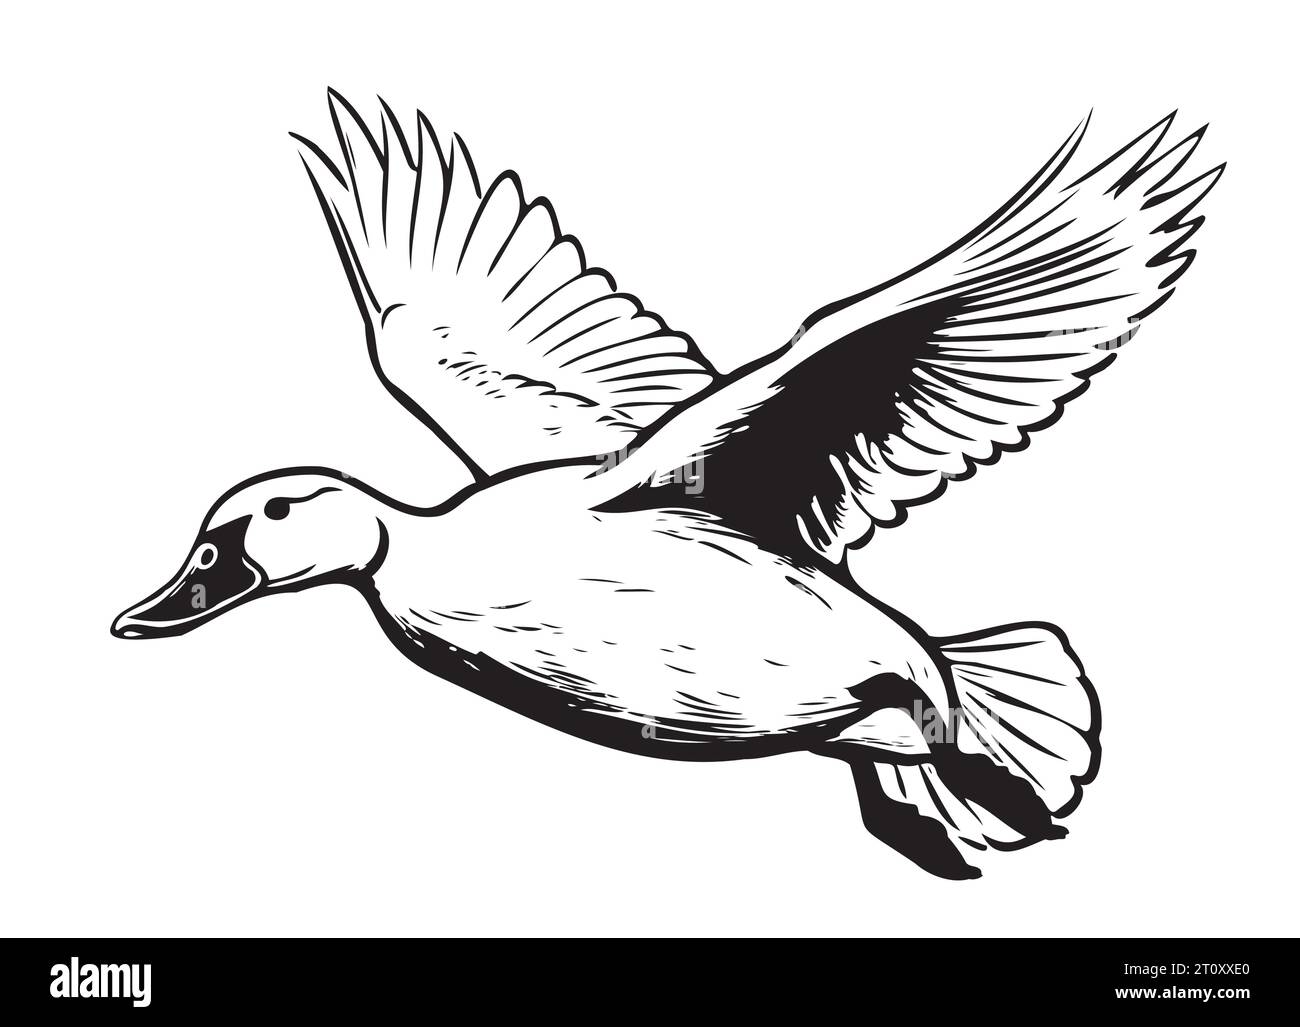 Croquis volant de canard dessiné à la main Vector Birds chasse Illustration de Vecteur